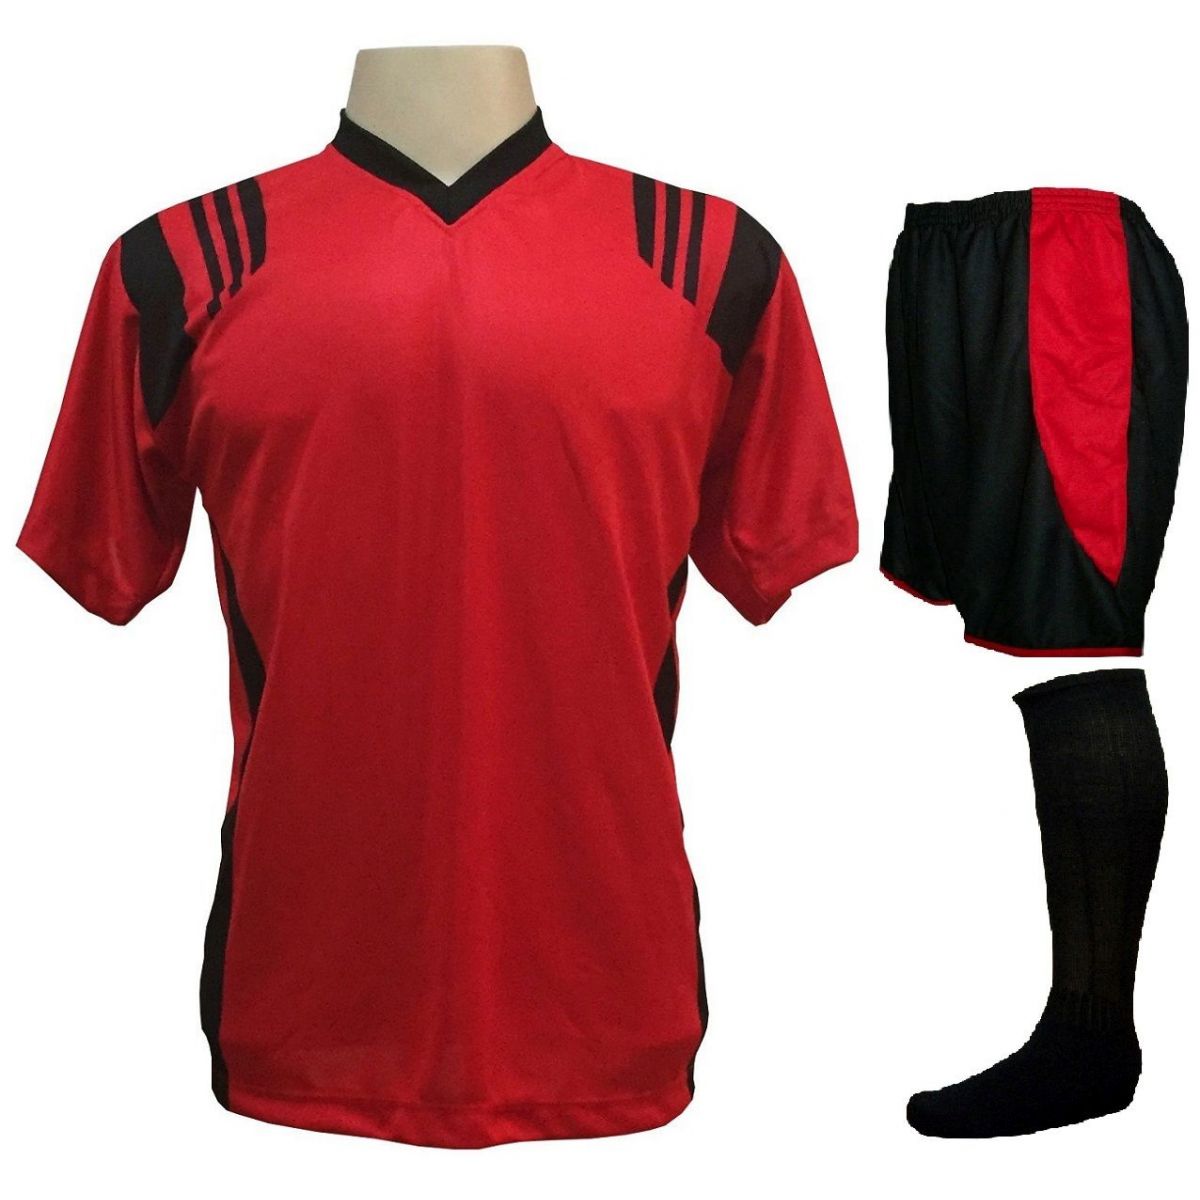 Uniforme Completo - Camisa modelo Roma Vermelho/Preto com Calção modelo Copa Preto/Vermelho 12+1 (12 camisas + 12 calções + 13 pares de meiões + 1 conjunto de goleiro) + Brindes